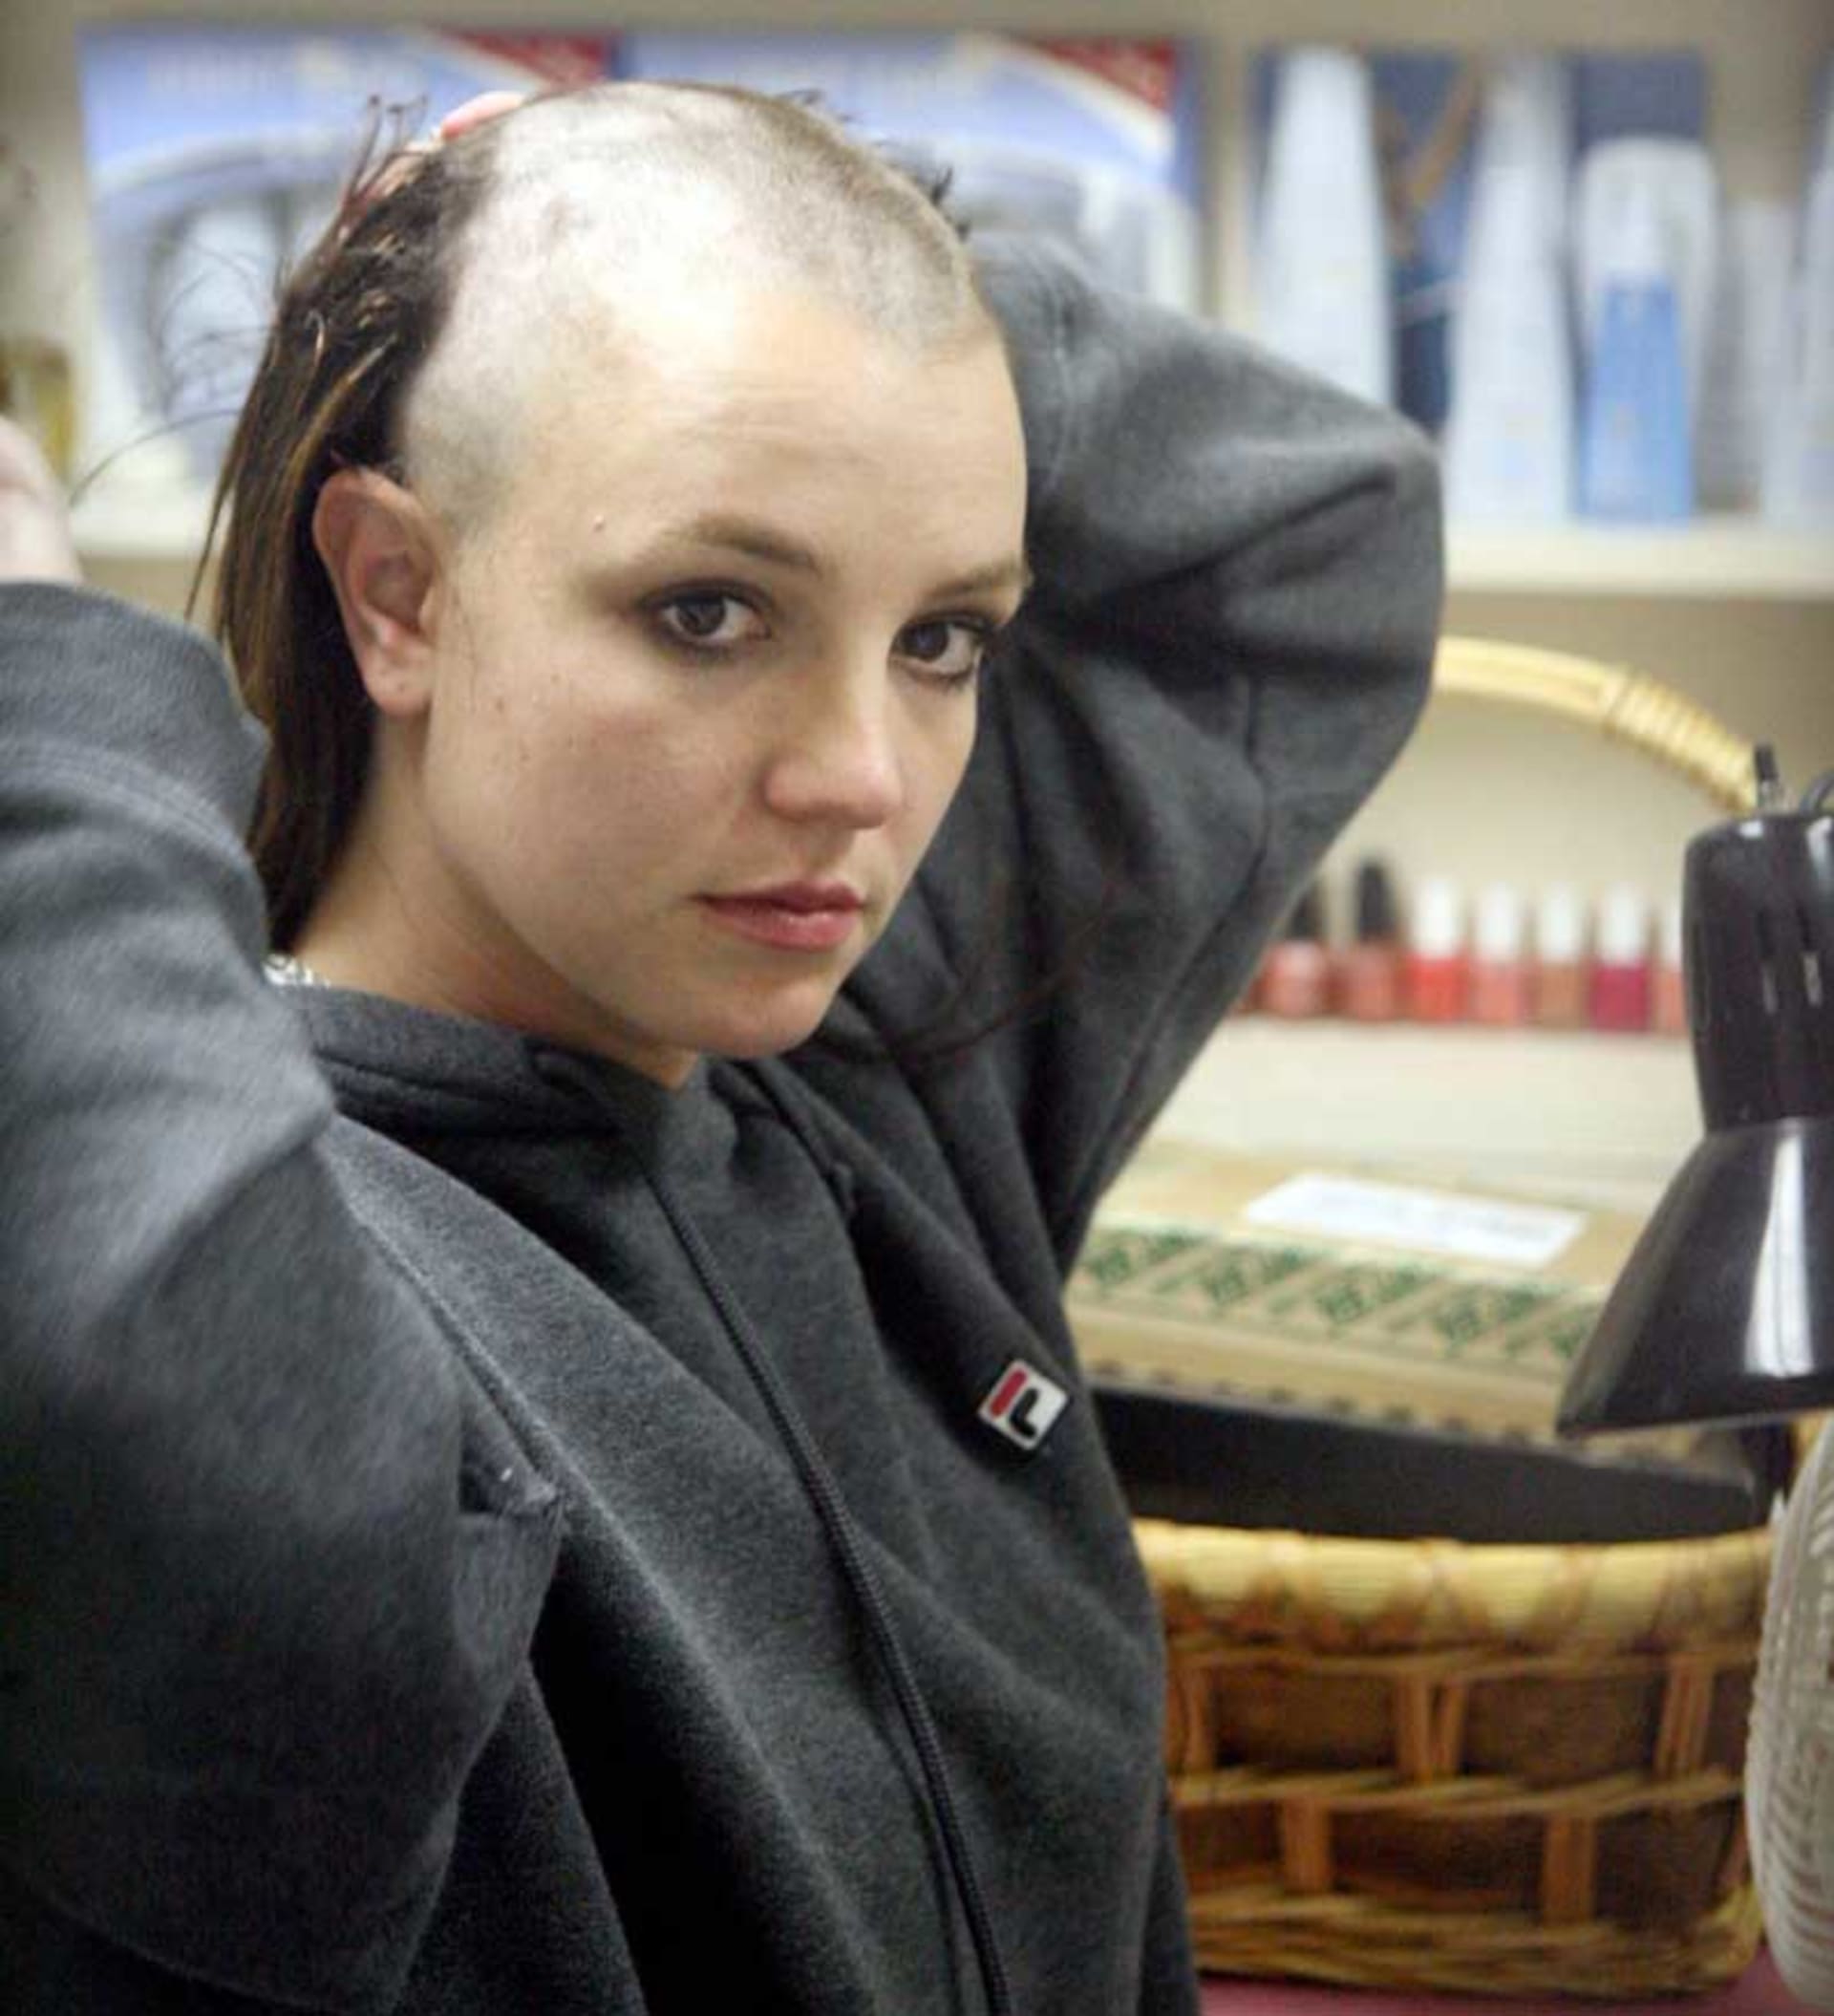 Zpěvačka Britney Spears si v drogovém opojení oholila vlasy